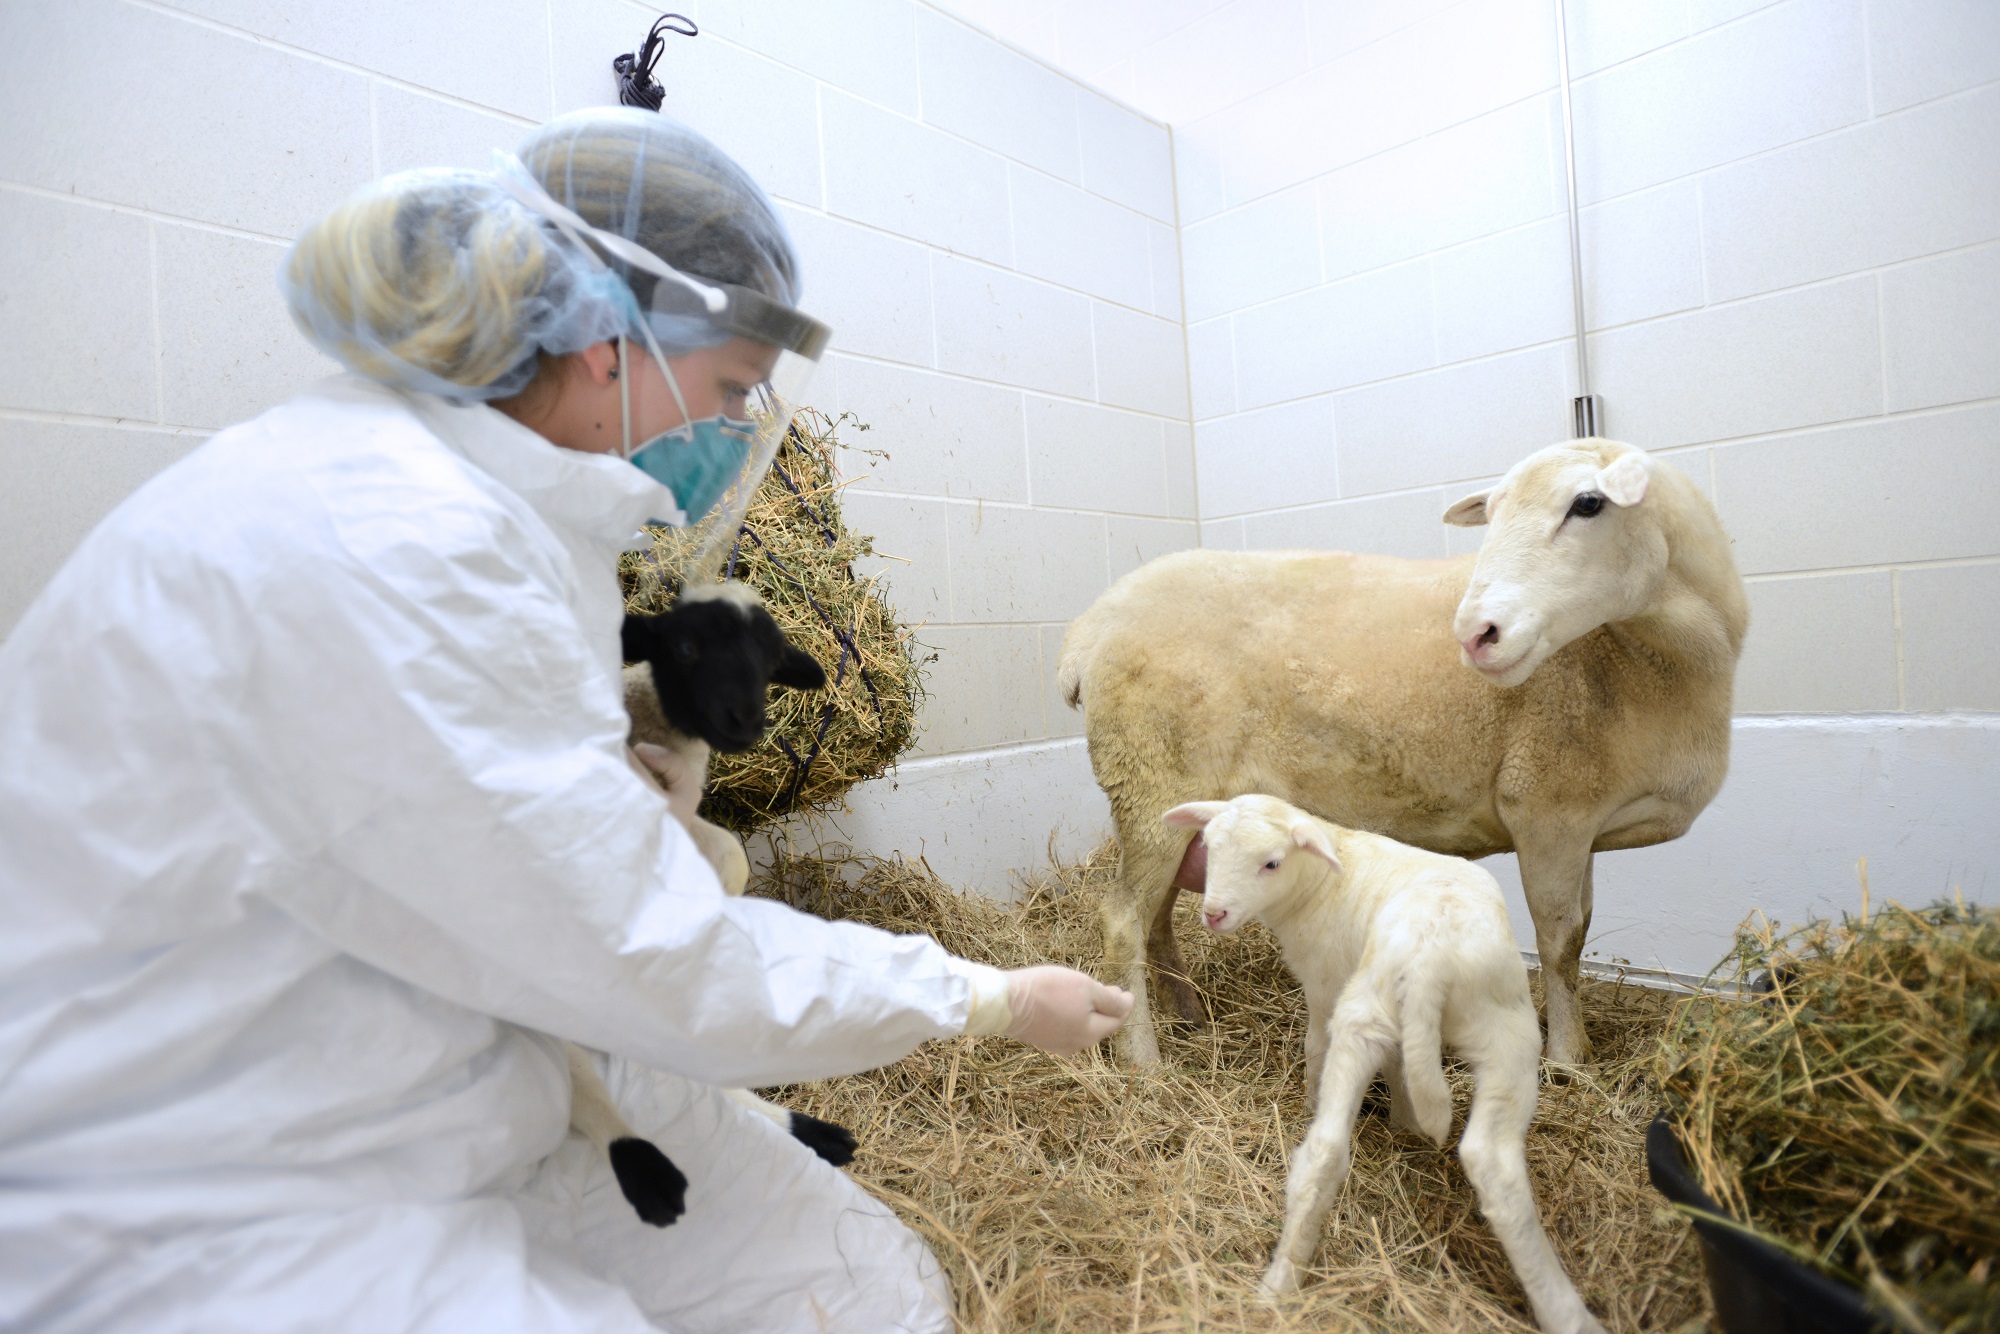 Укол ягненку. Пастереллез овец вакцинации. Ветеринария сельскохозяйственных животных. Ветеринария в сельском хозяйстве.